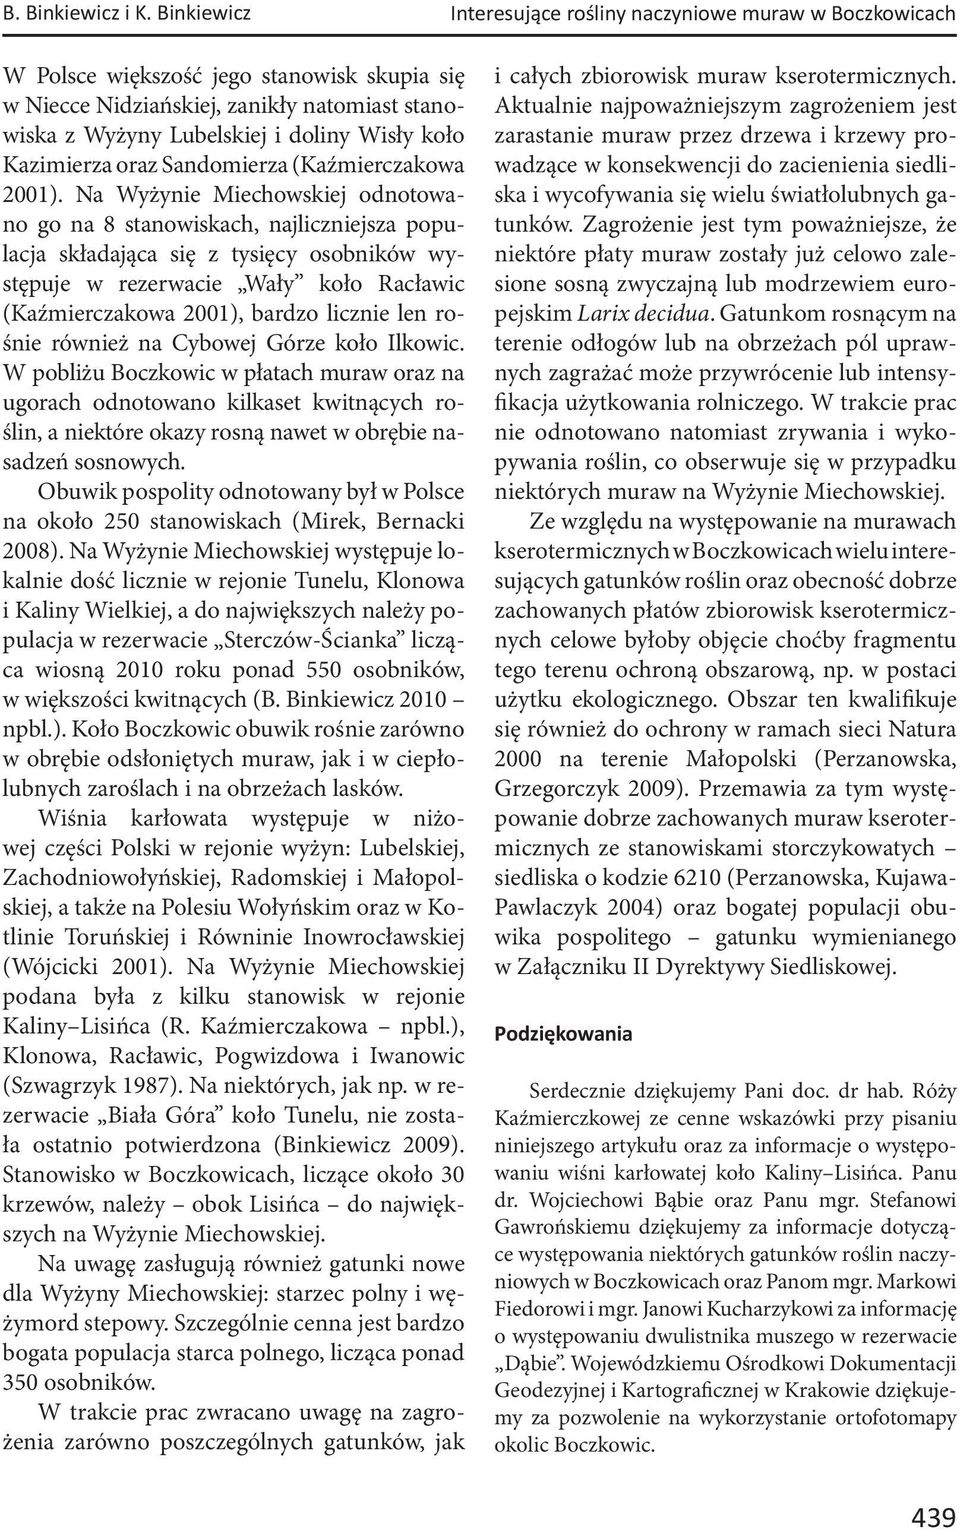 koło Kazimierza oraz Sandomierza (Kaźmierczakowa 2001).